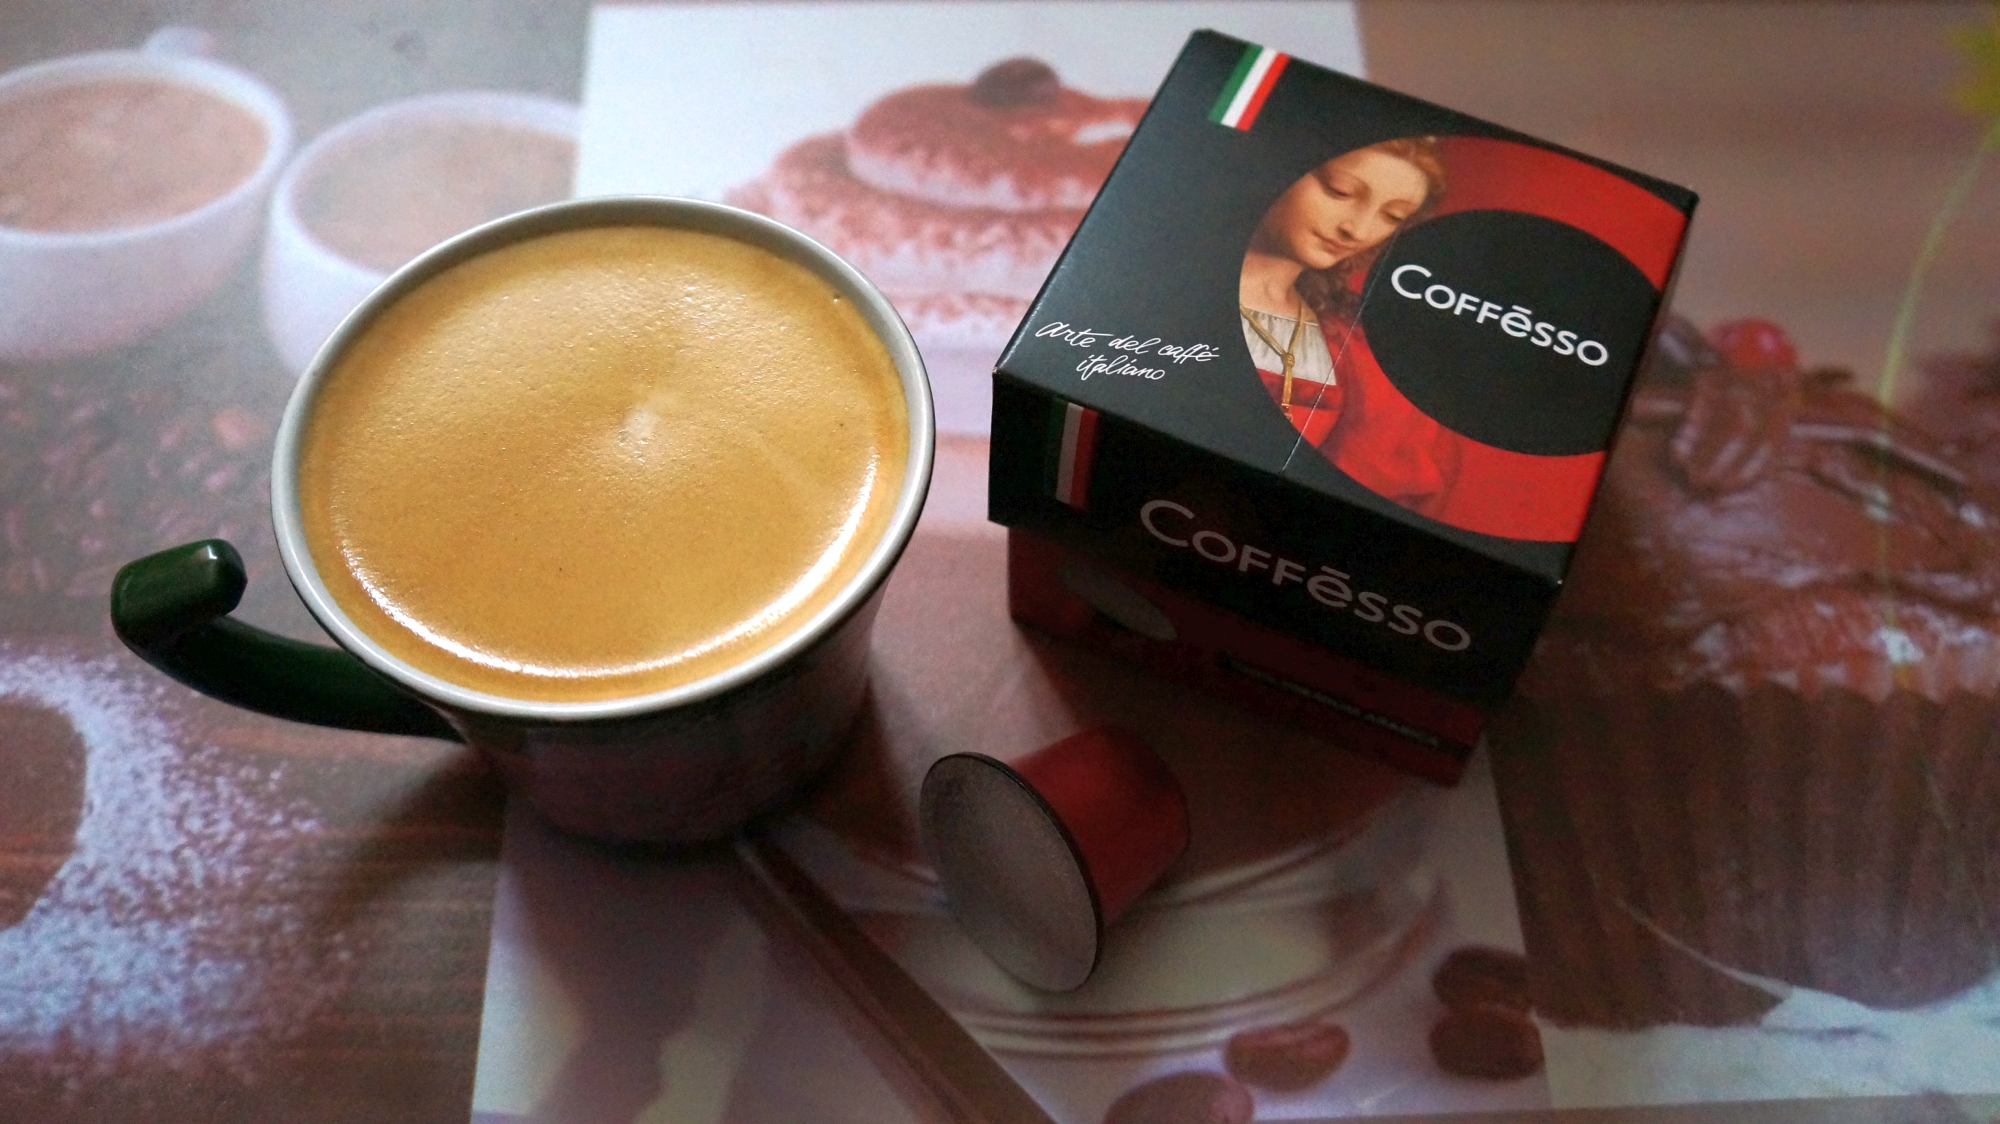 Кофе в капсулах Coffesso Classico Italiano стандарта Nespresso